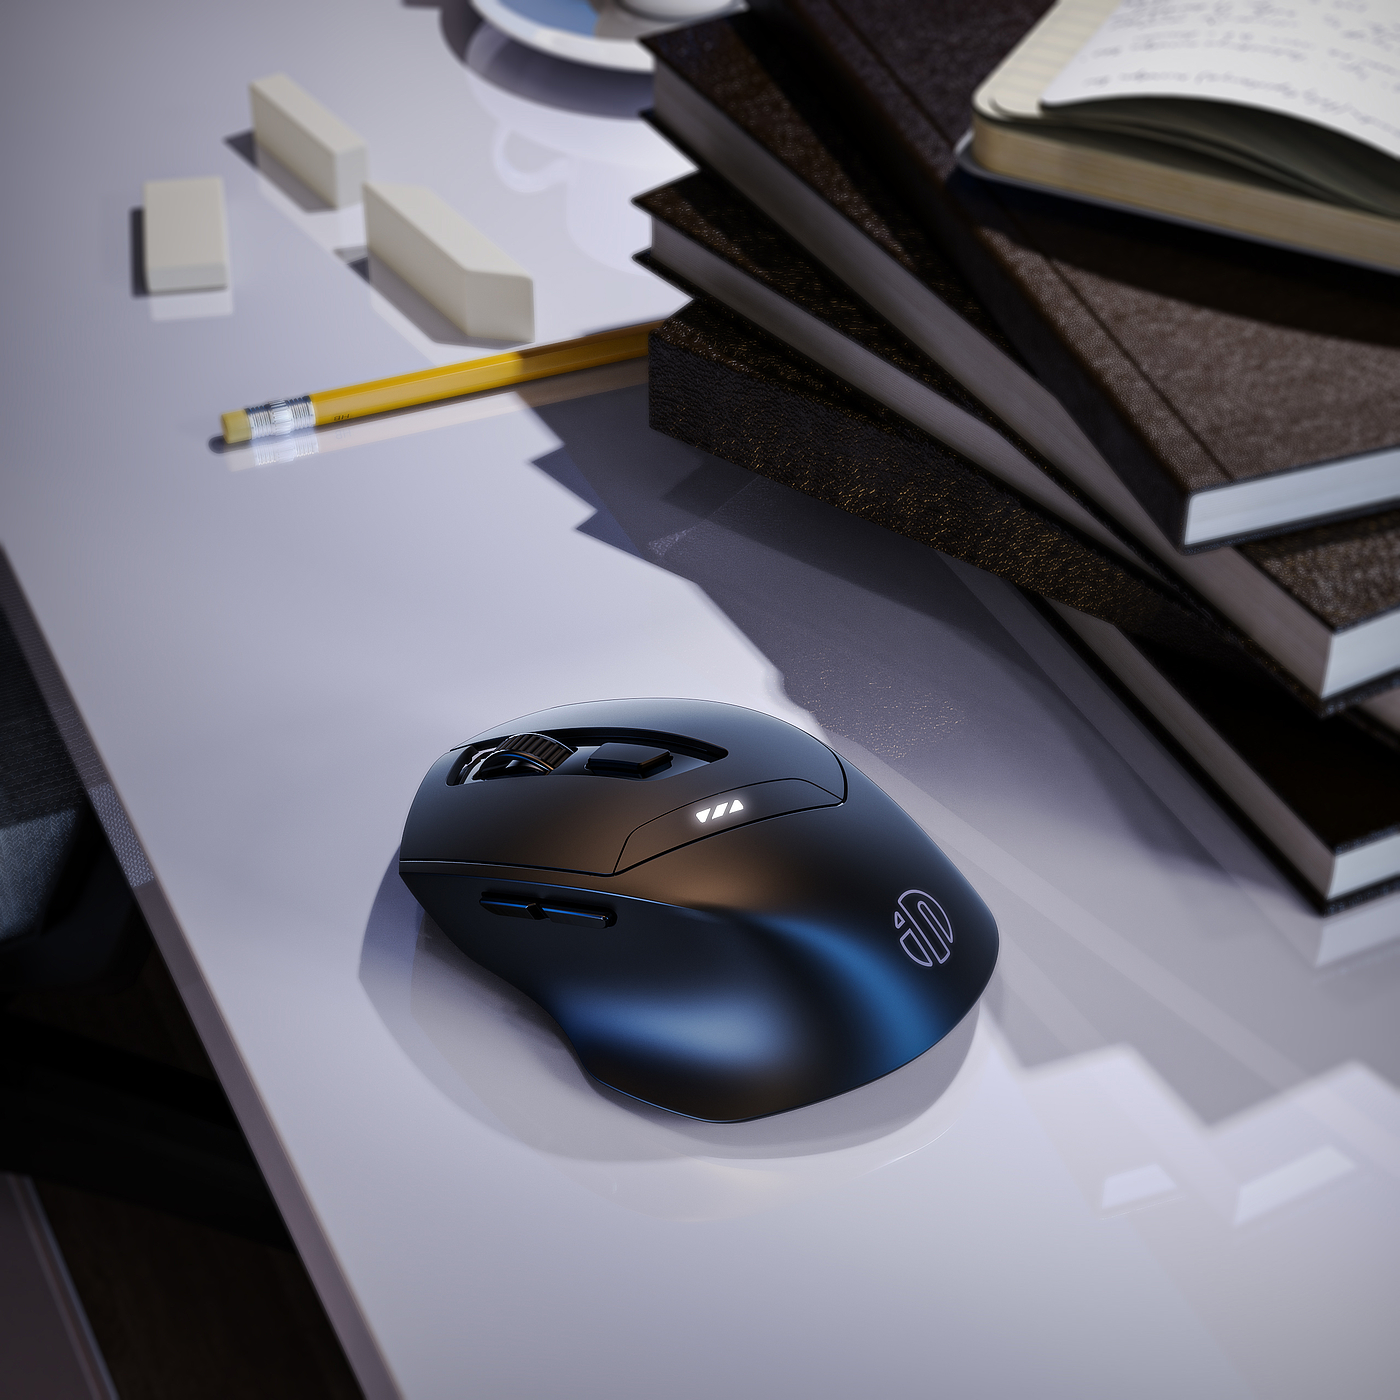 键盘，鼠标，产品渲染，3c，作品集，ks，